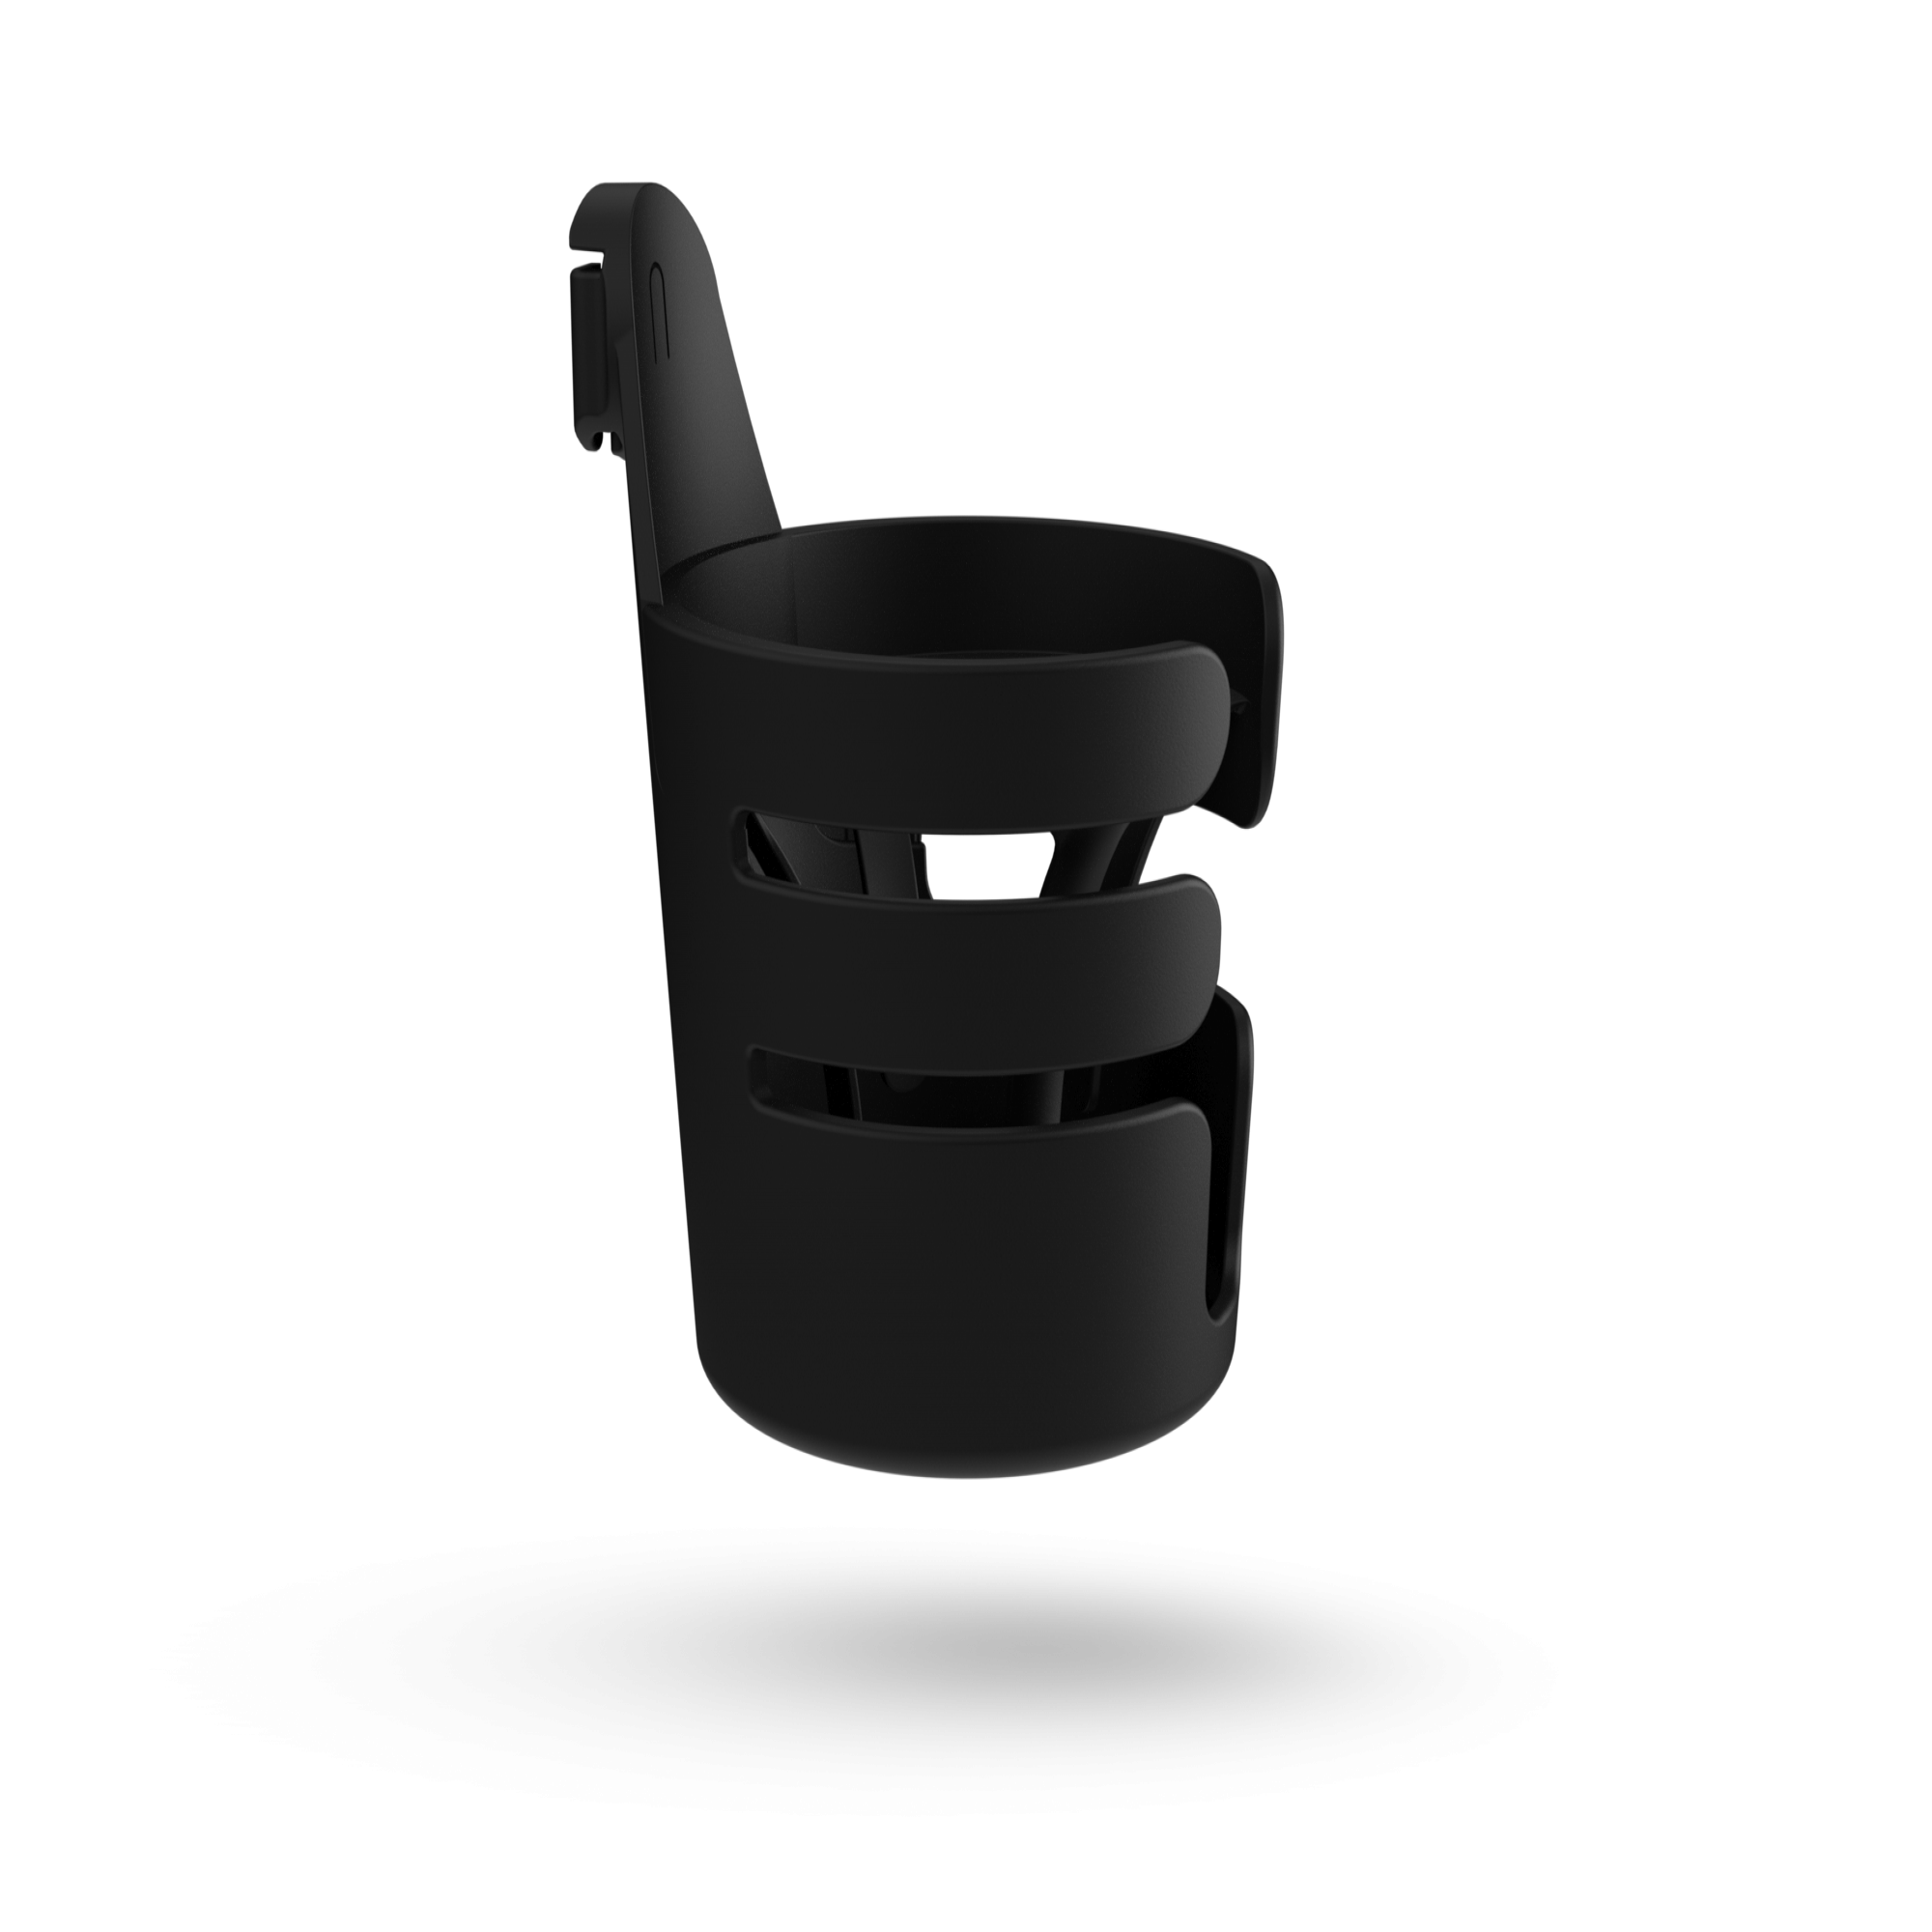 Bugaboo Cup Holder - Black : Target